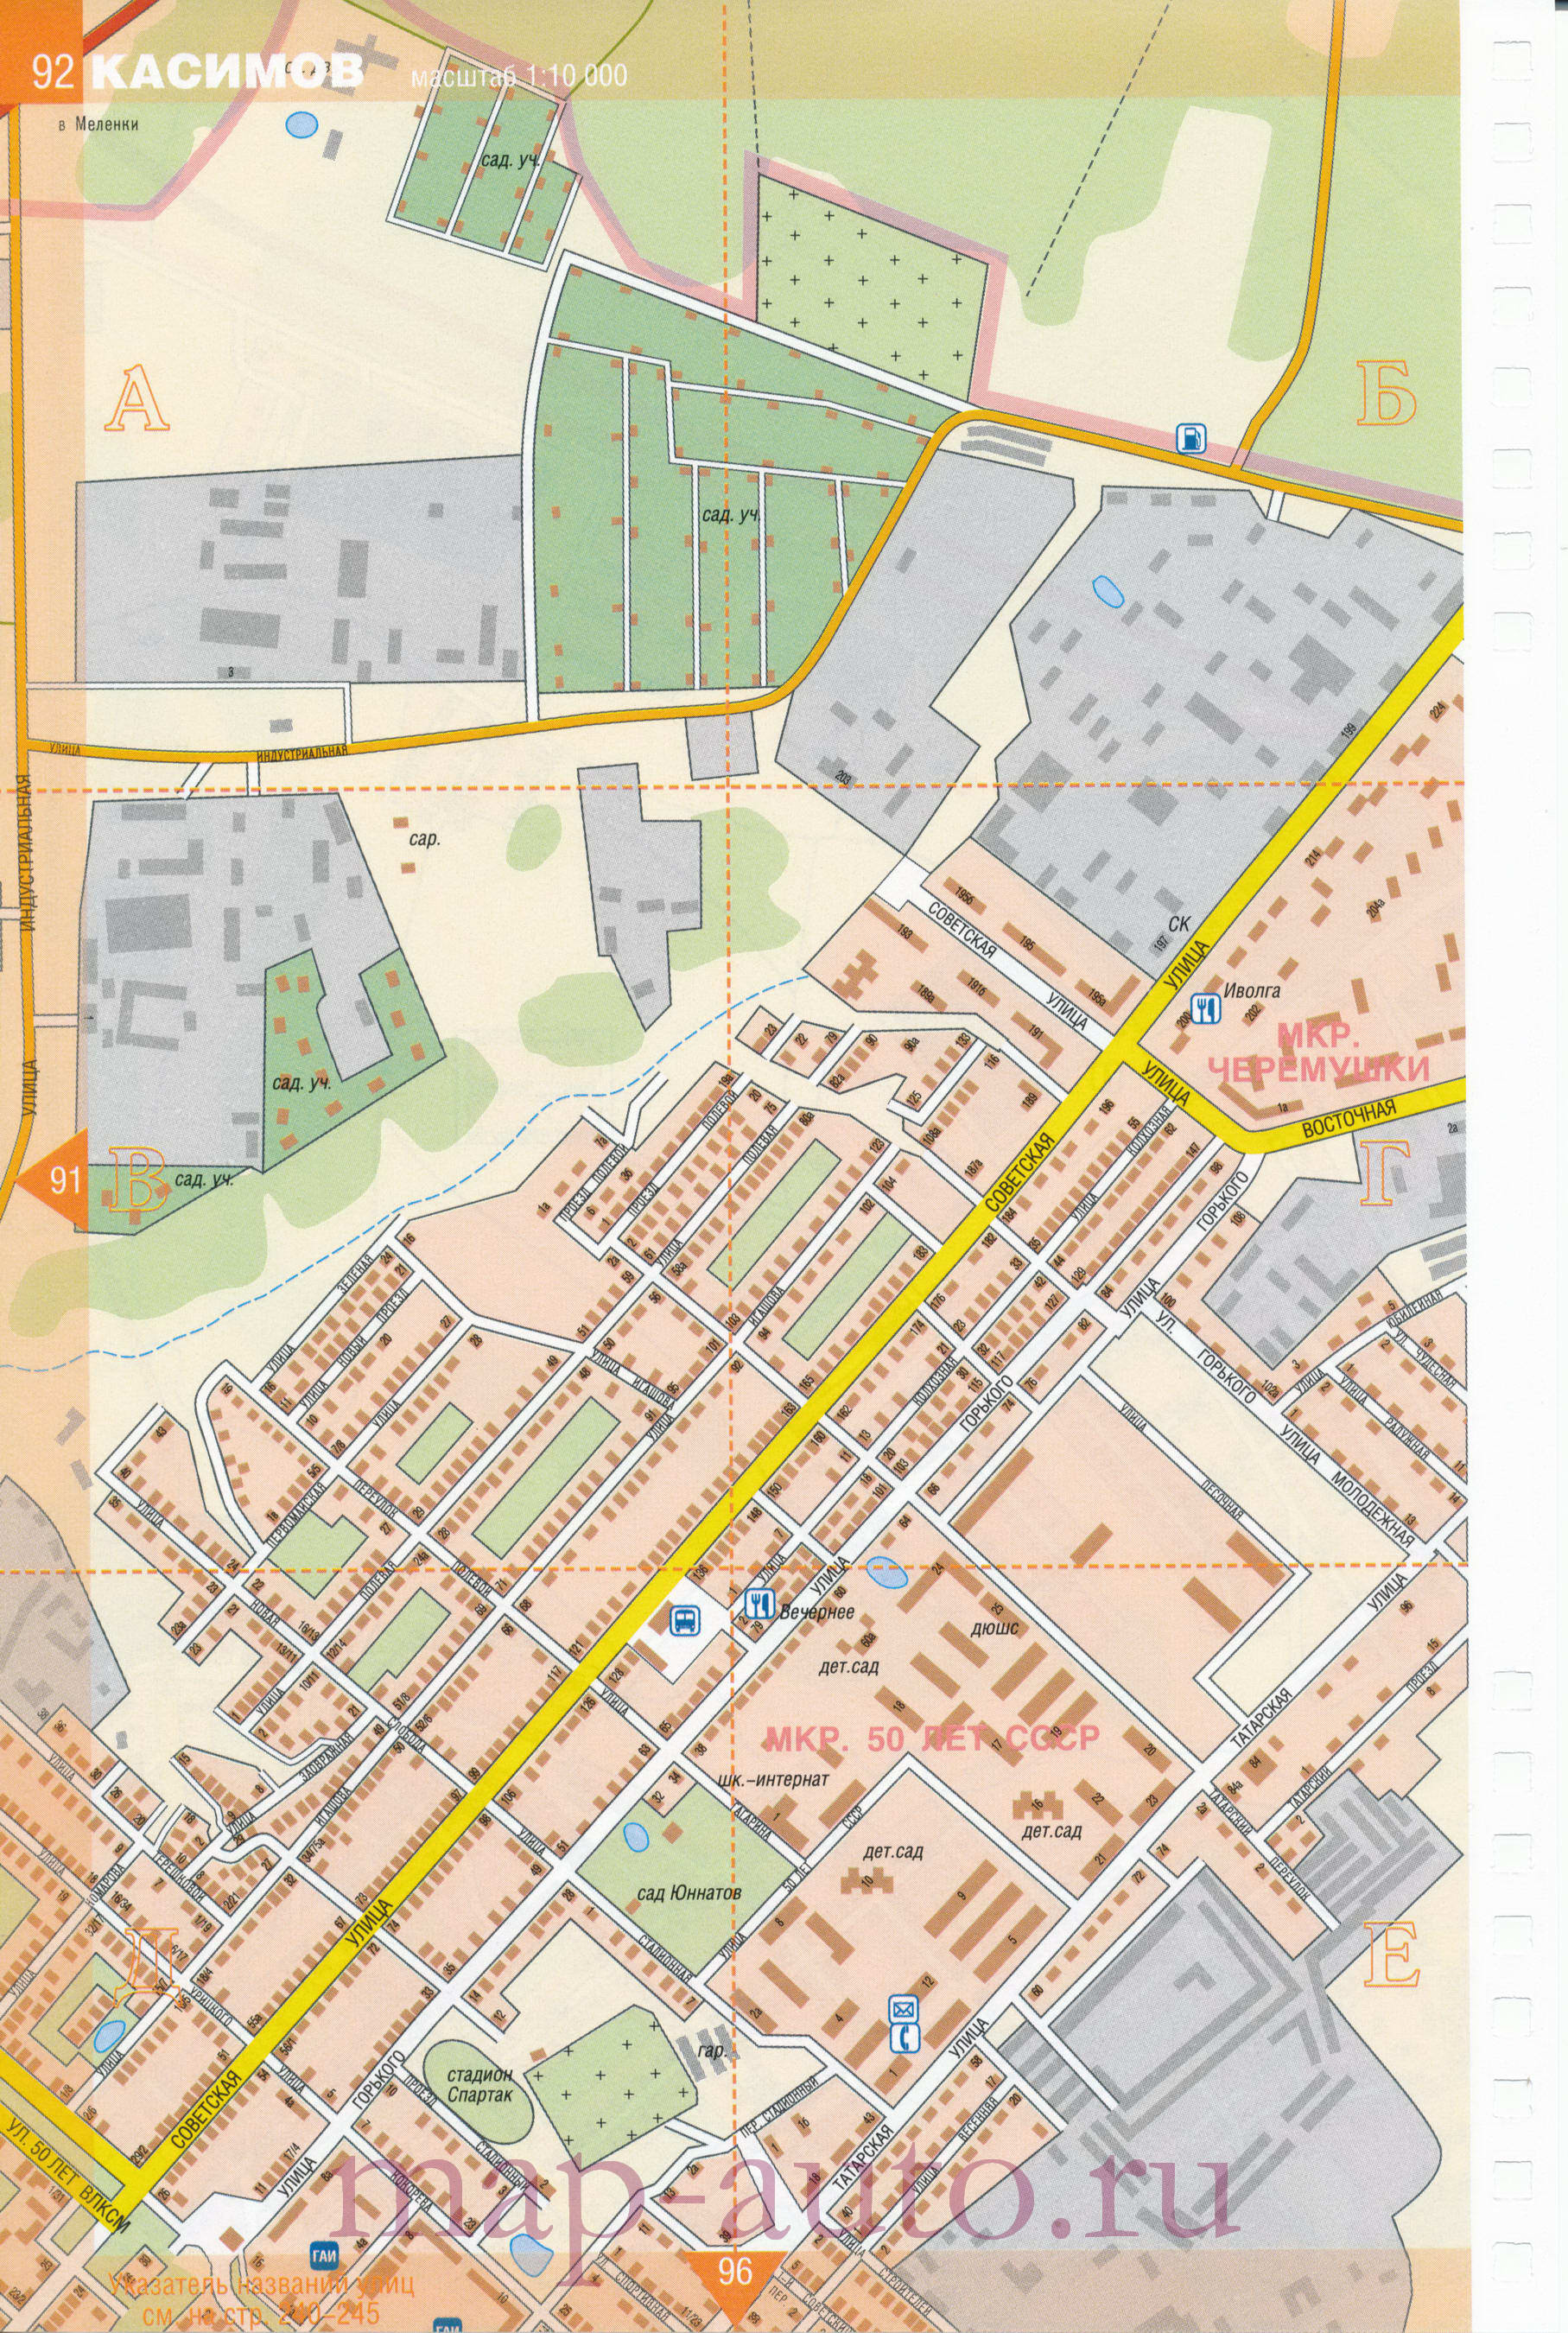 Карта Касимова. Подробнейшая карта города Касимов Рязанской области сназваниями улиц и номерами домов, B0 -